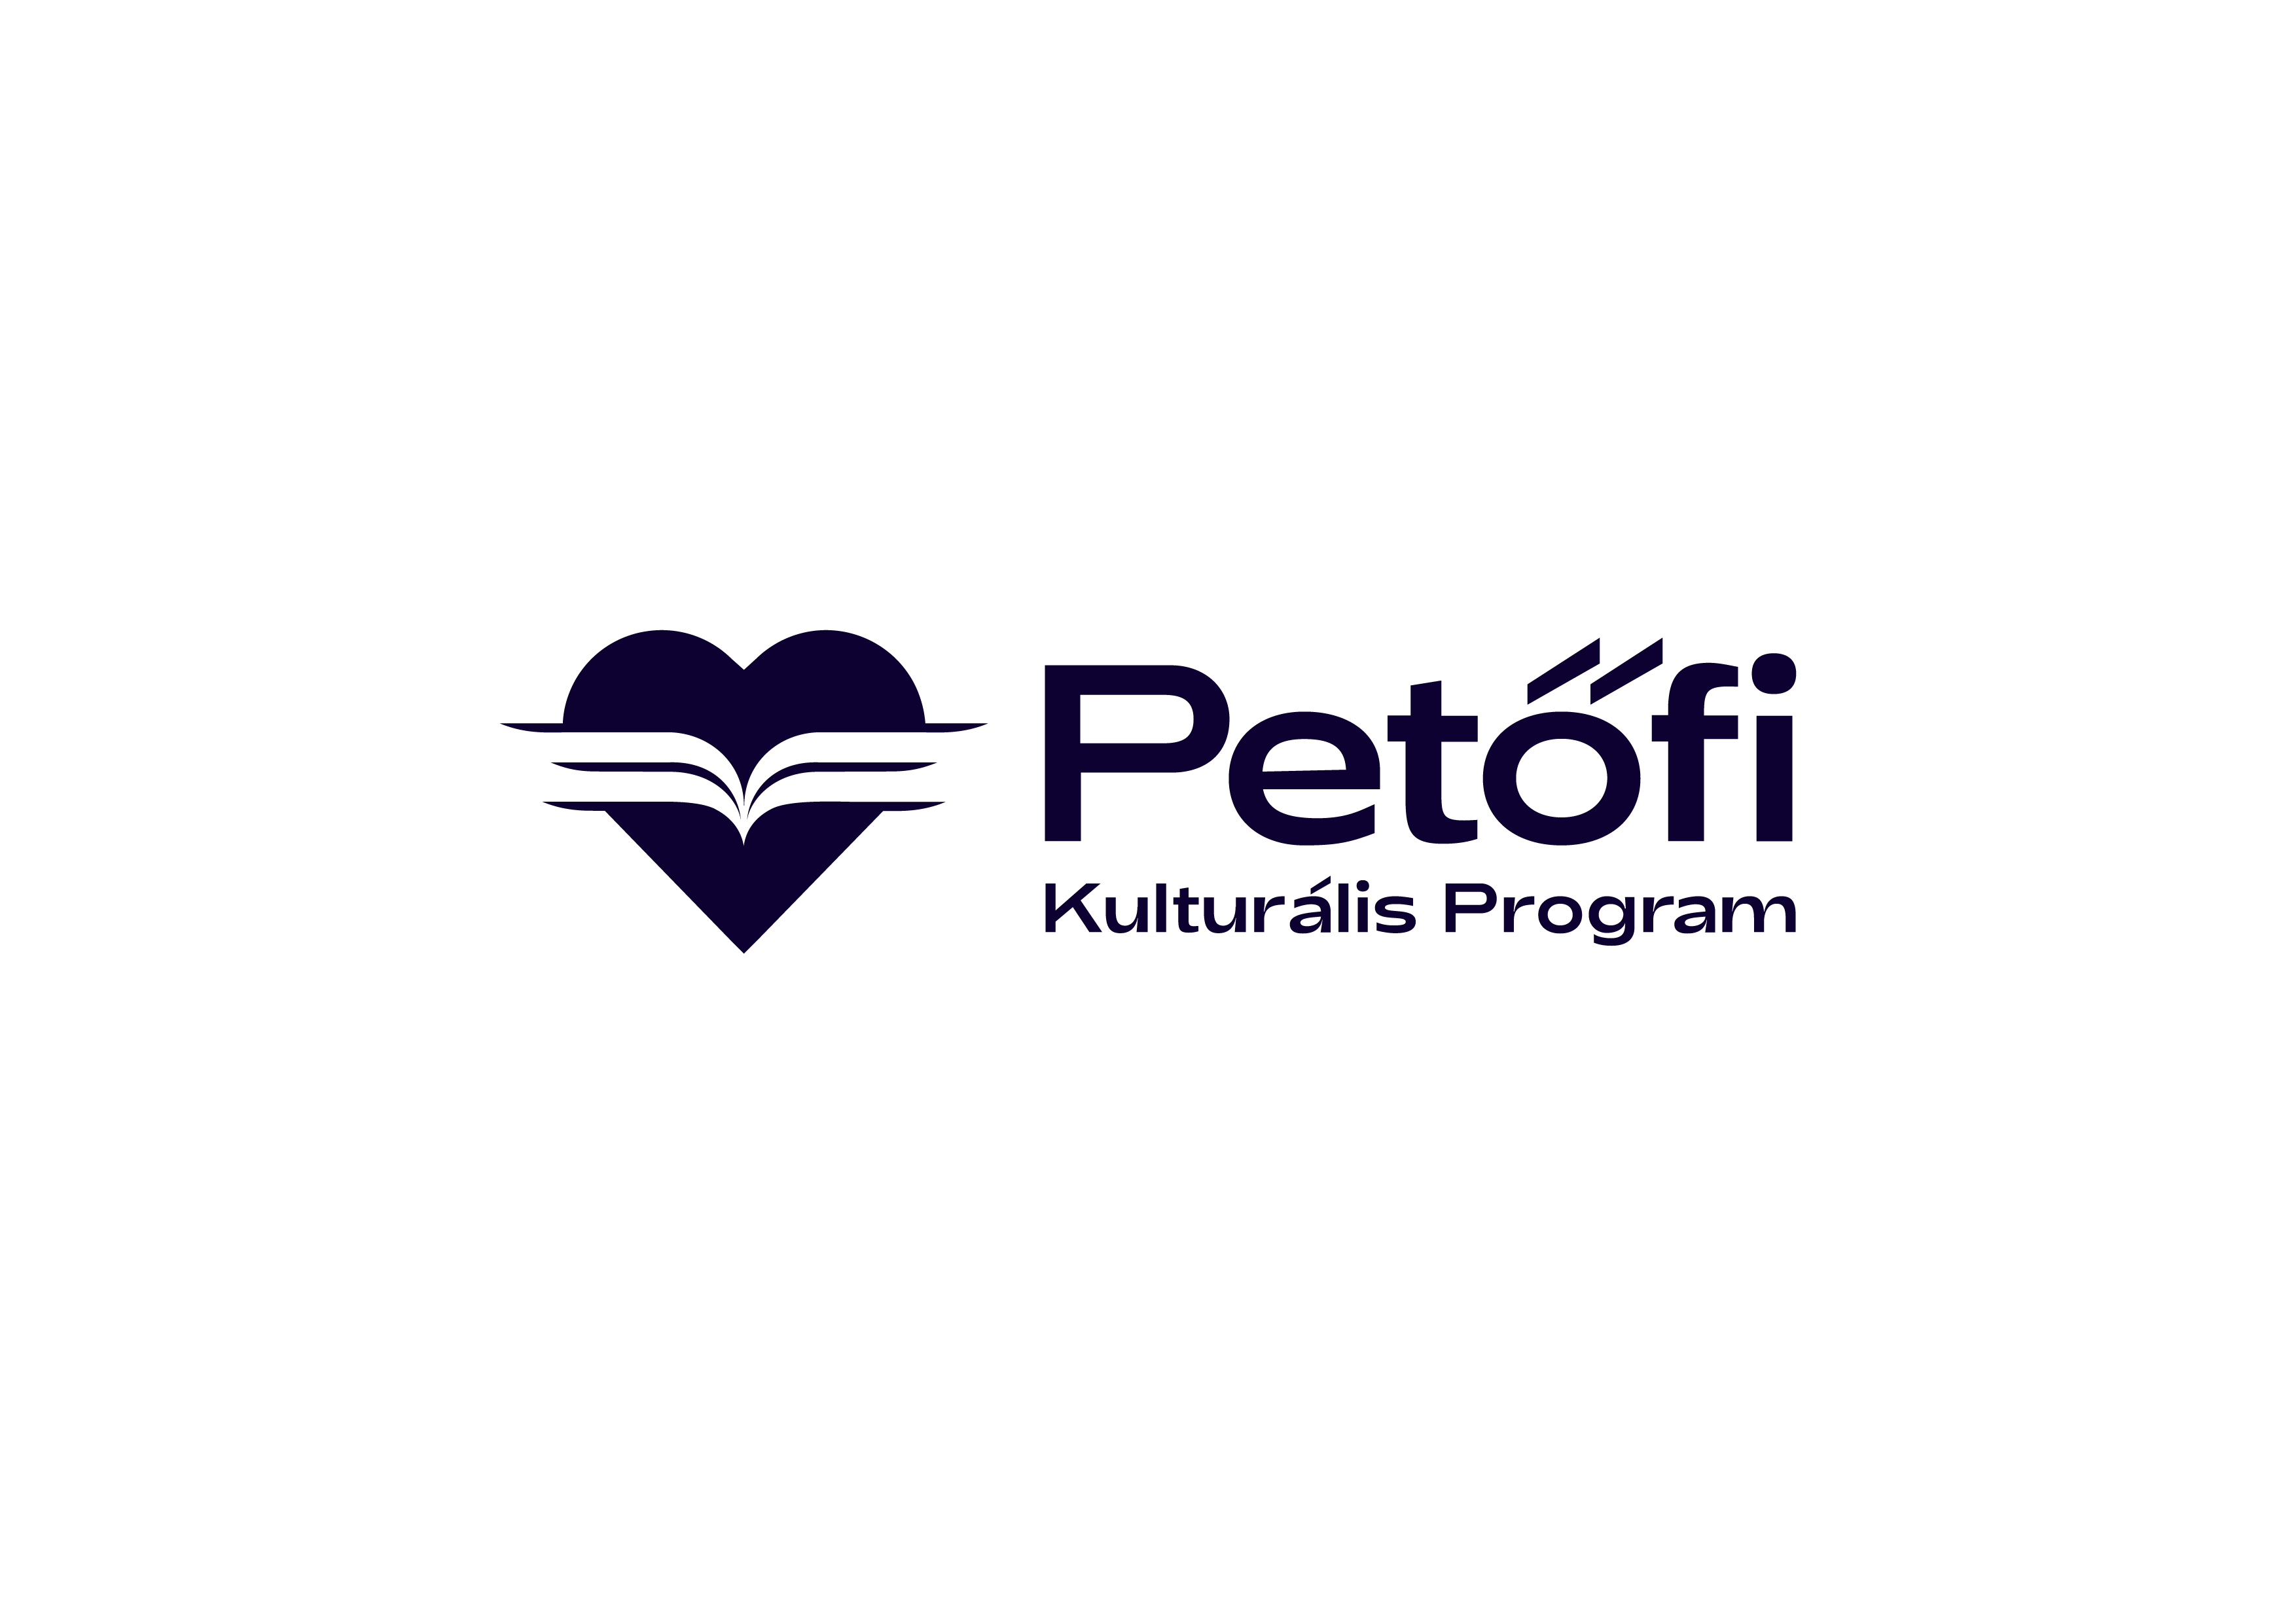 PKP logo